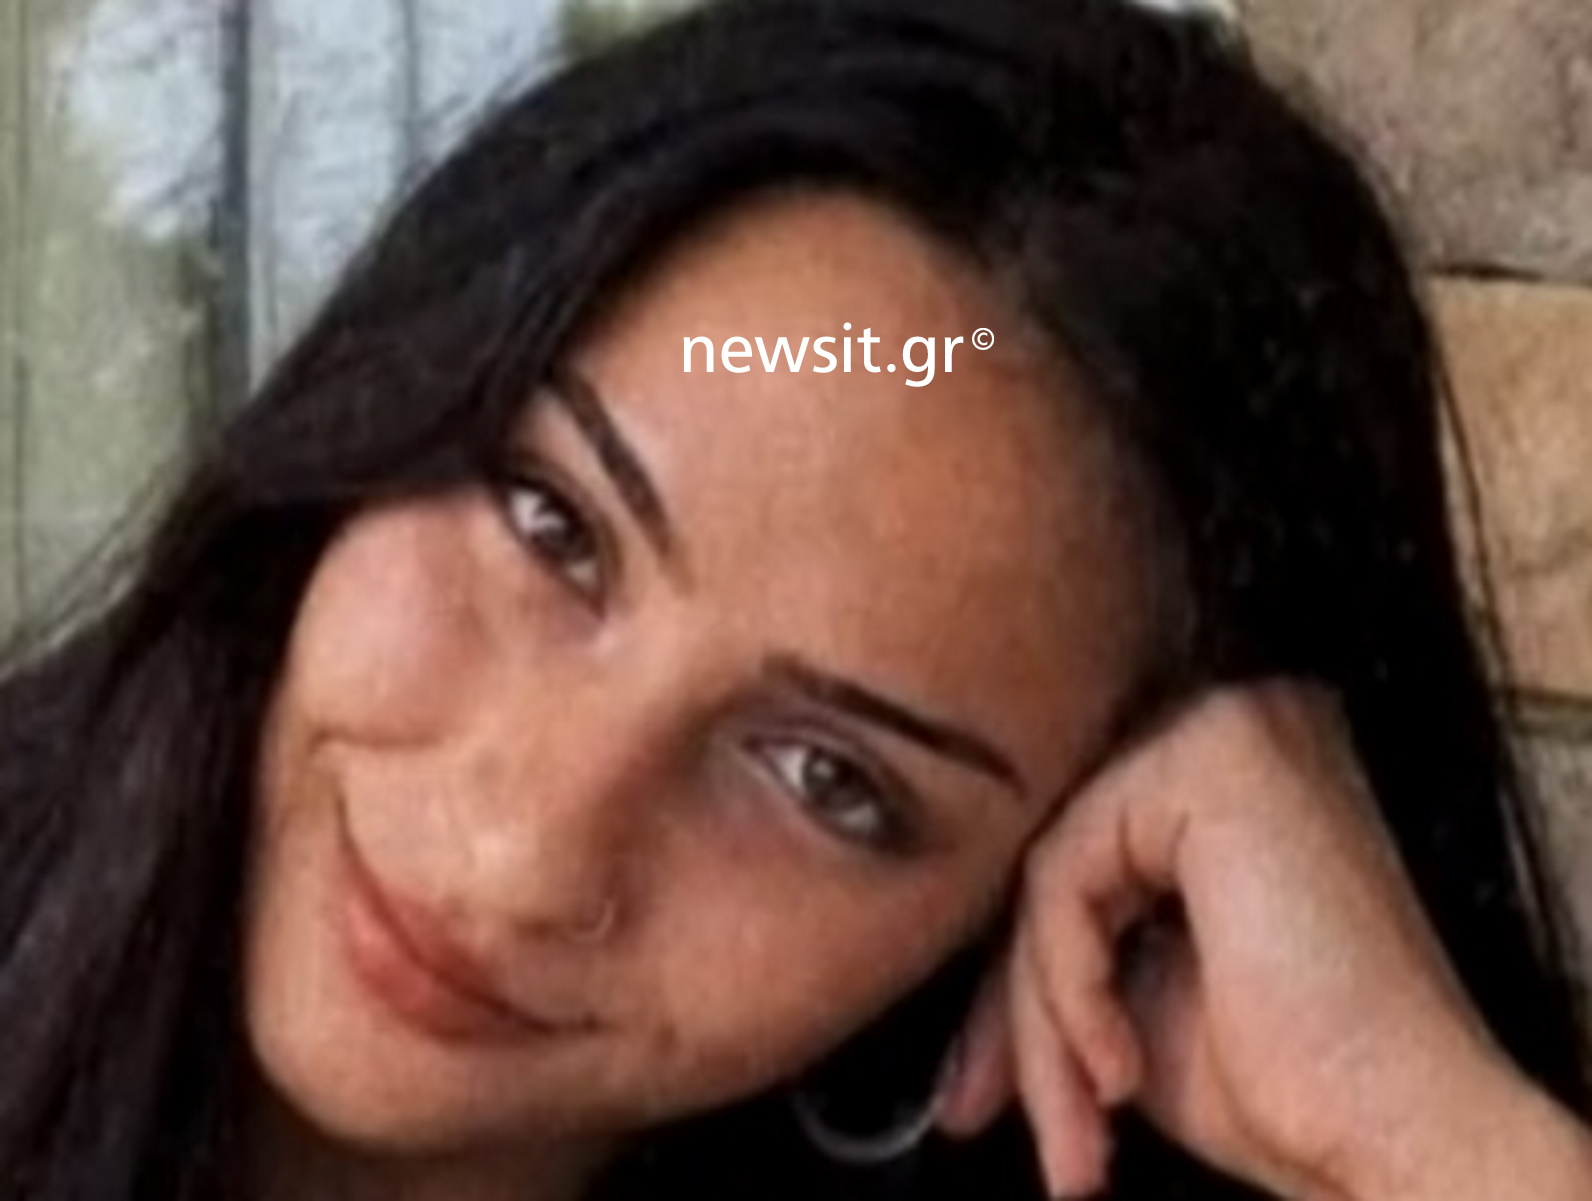 Τέμπη: «Οι εγκληματίες δολοφόνησαν την κόρη μου» – Ξεσπάει στο newsit.gr η μητέρα της 22χρονης Αφροδίτης Τσιώμα